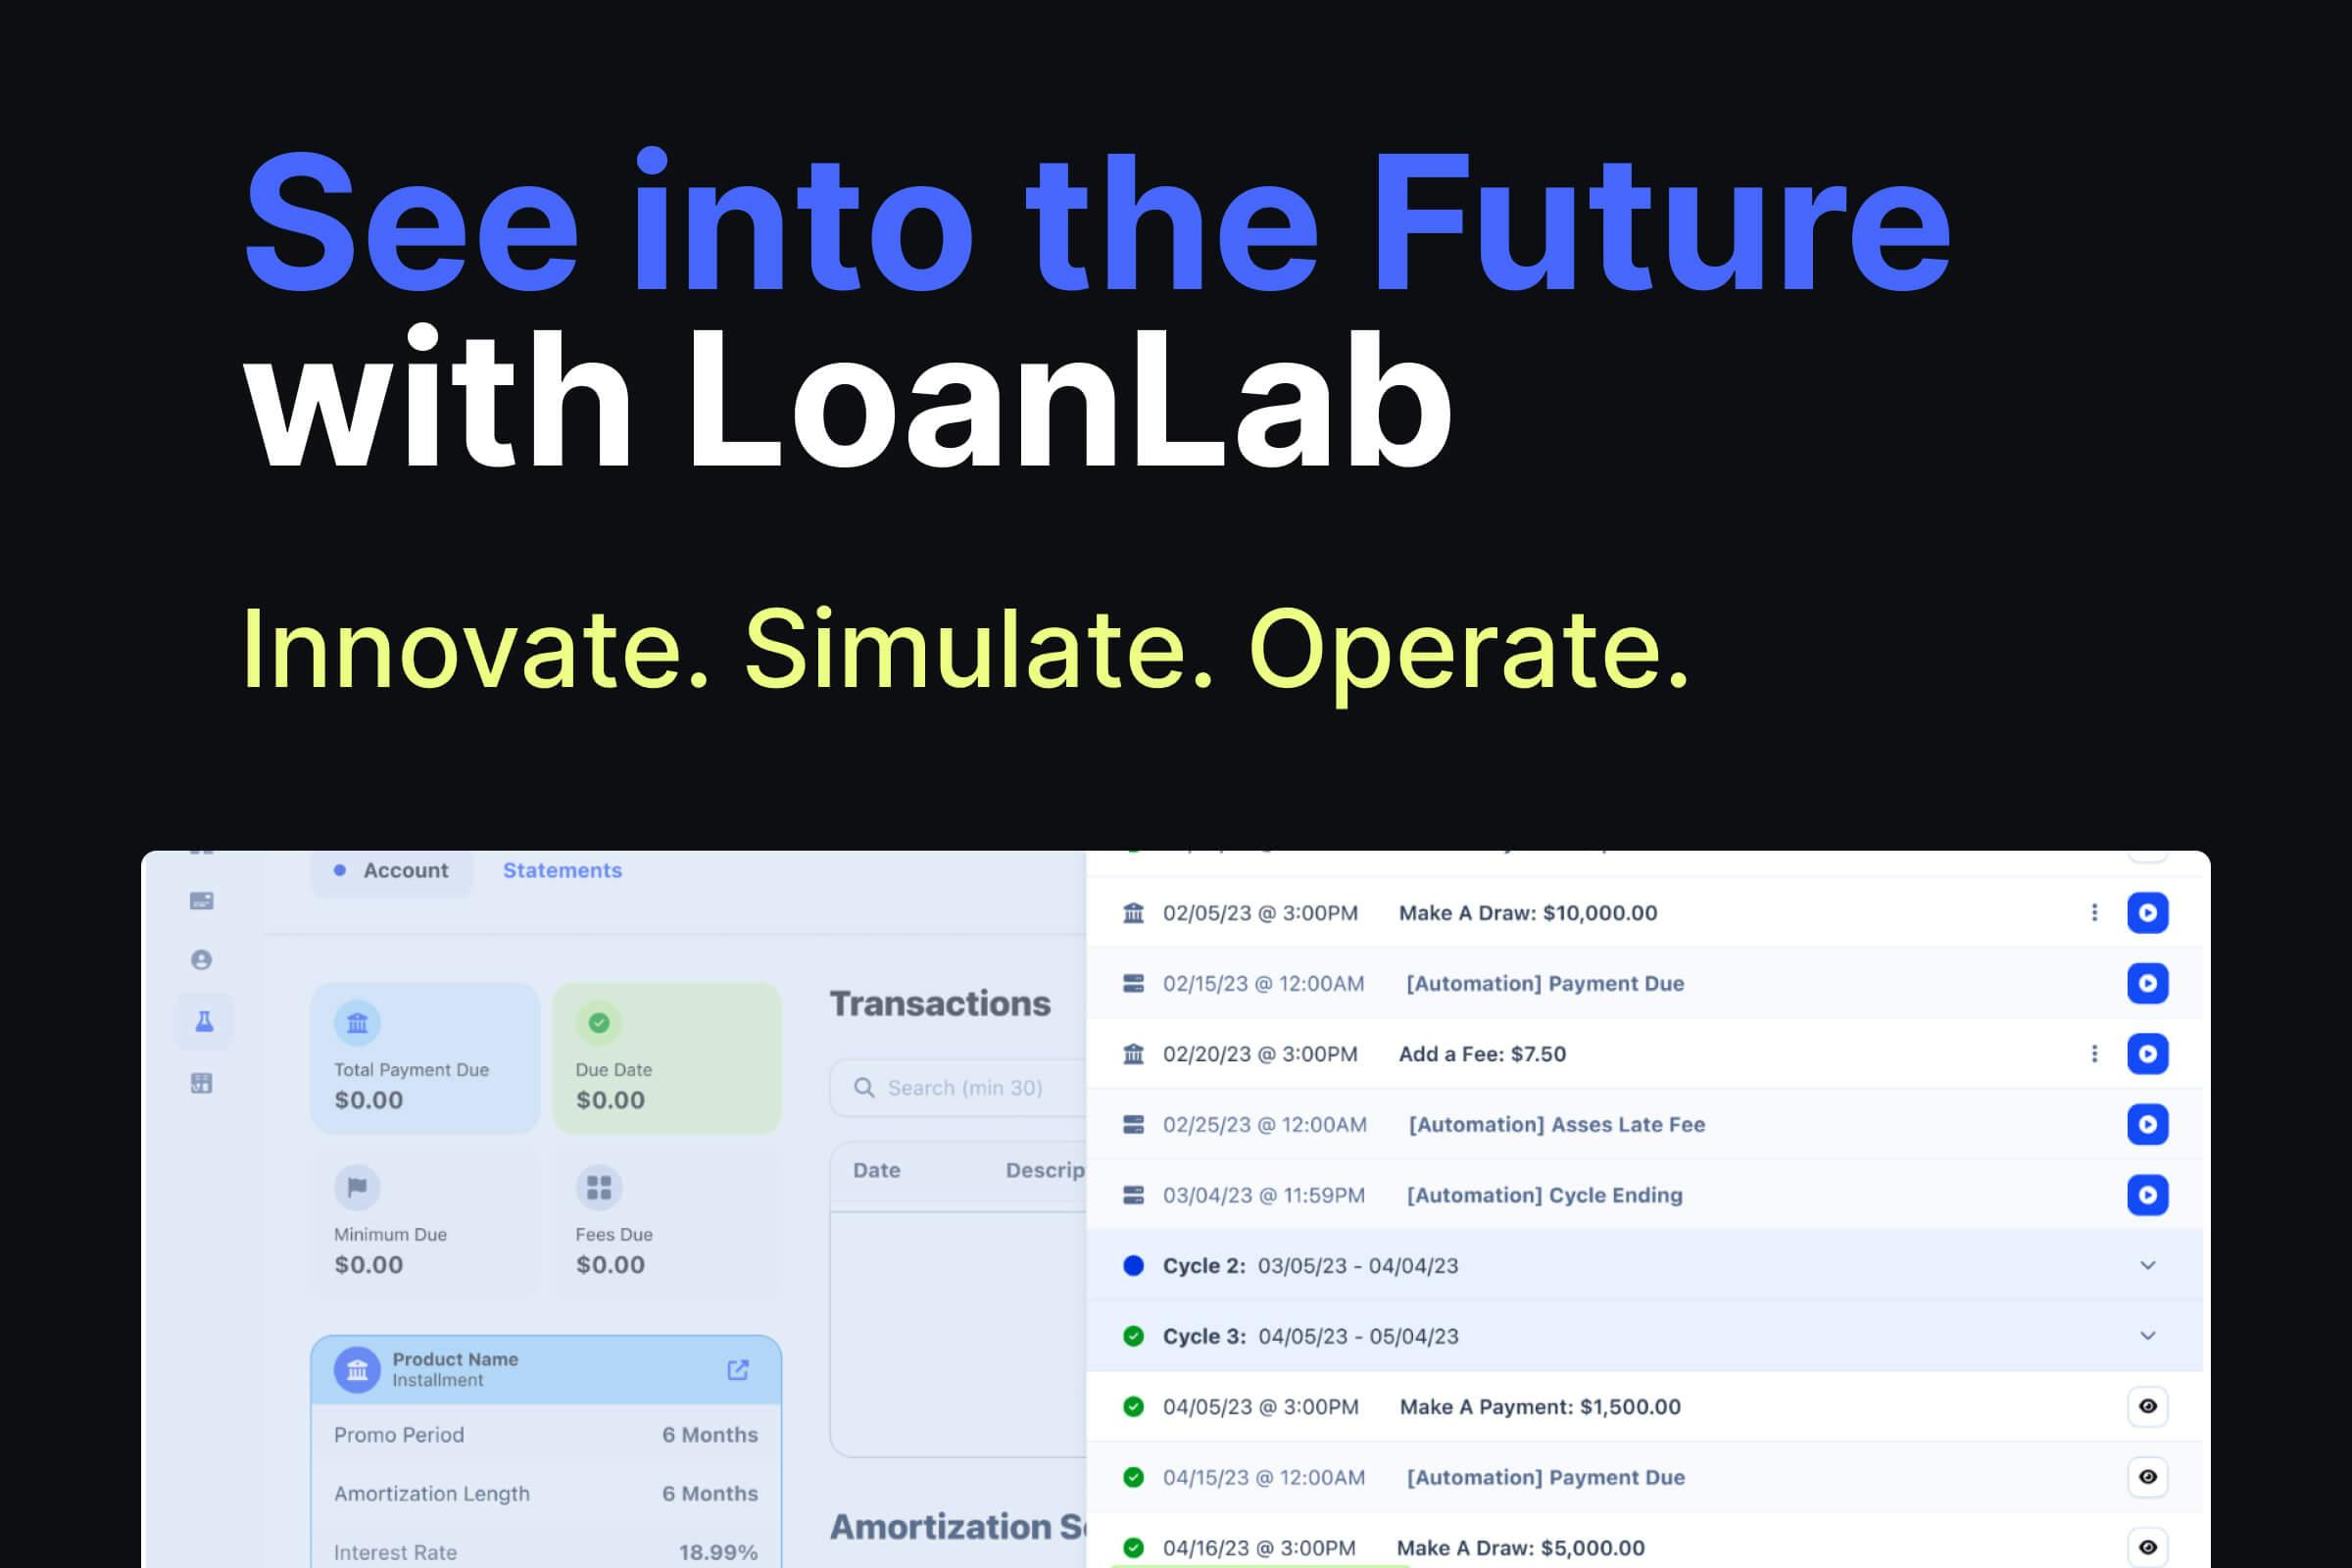 Meet LoanLab Innovate, Simulate, Operate